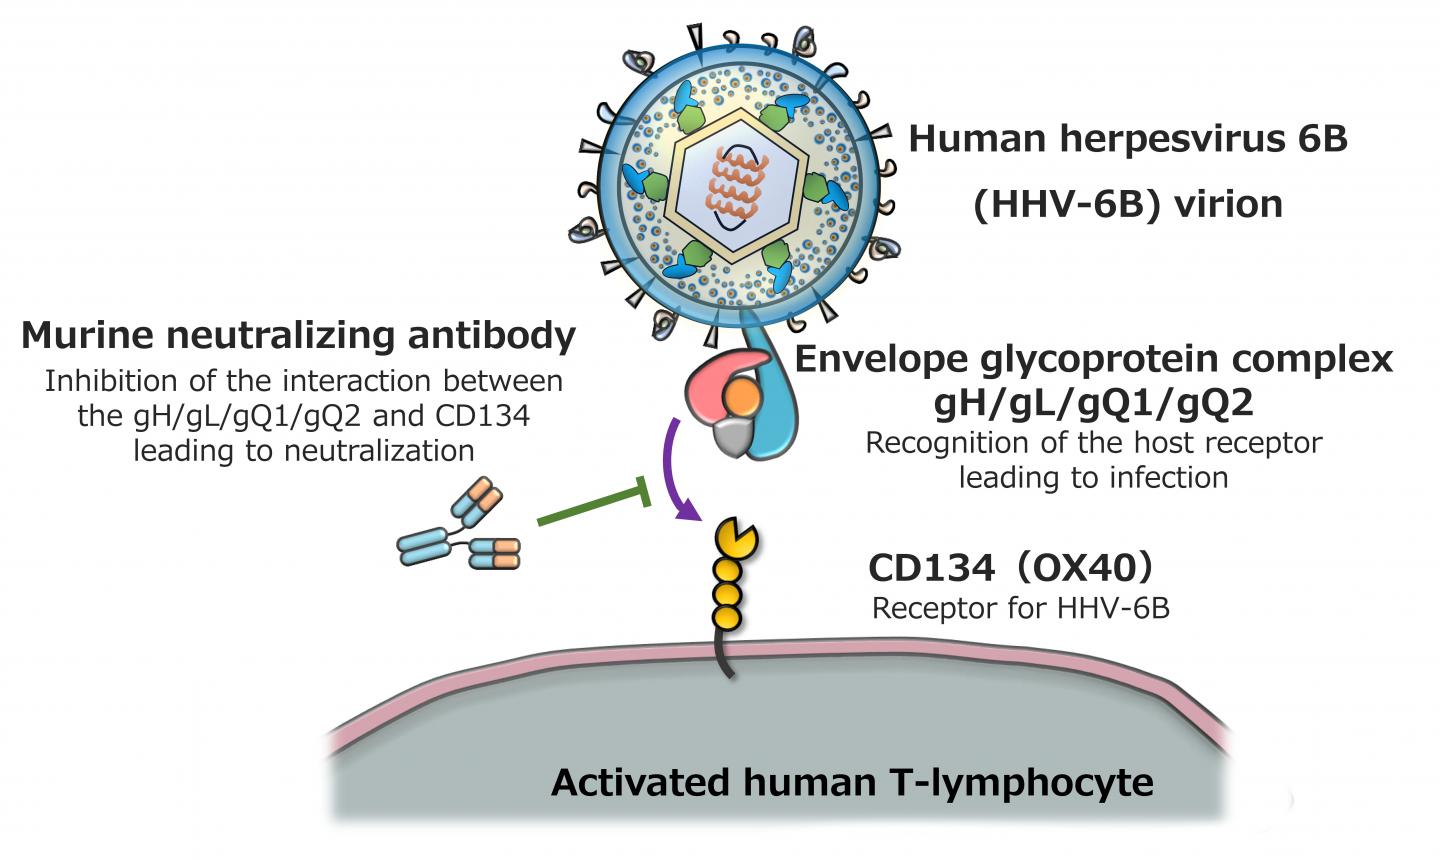 ヒトヘルペスウイルス6Bの感染防御に効果的なヒト化抗体の作製に成功（図１）